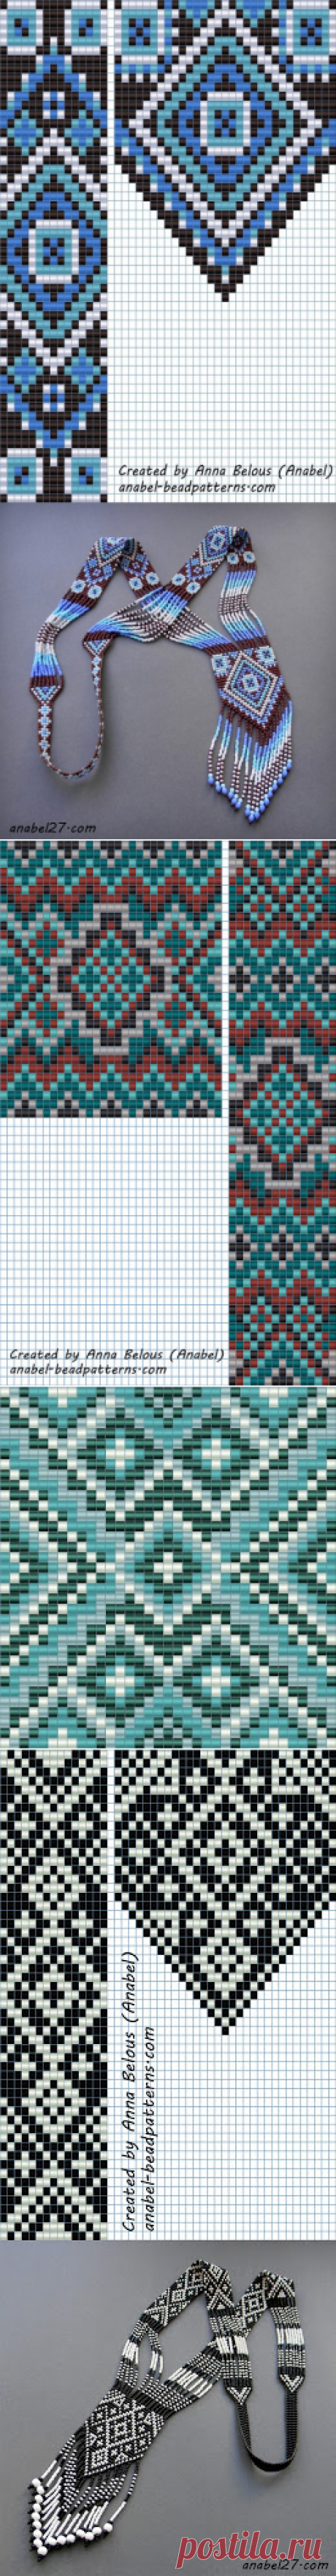 Схема гердана (гайтана) бисерное ткачество -... / Разное / БИСЕРОПЛЕТЕНИЕ / Pinme.ru / Pinme